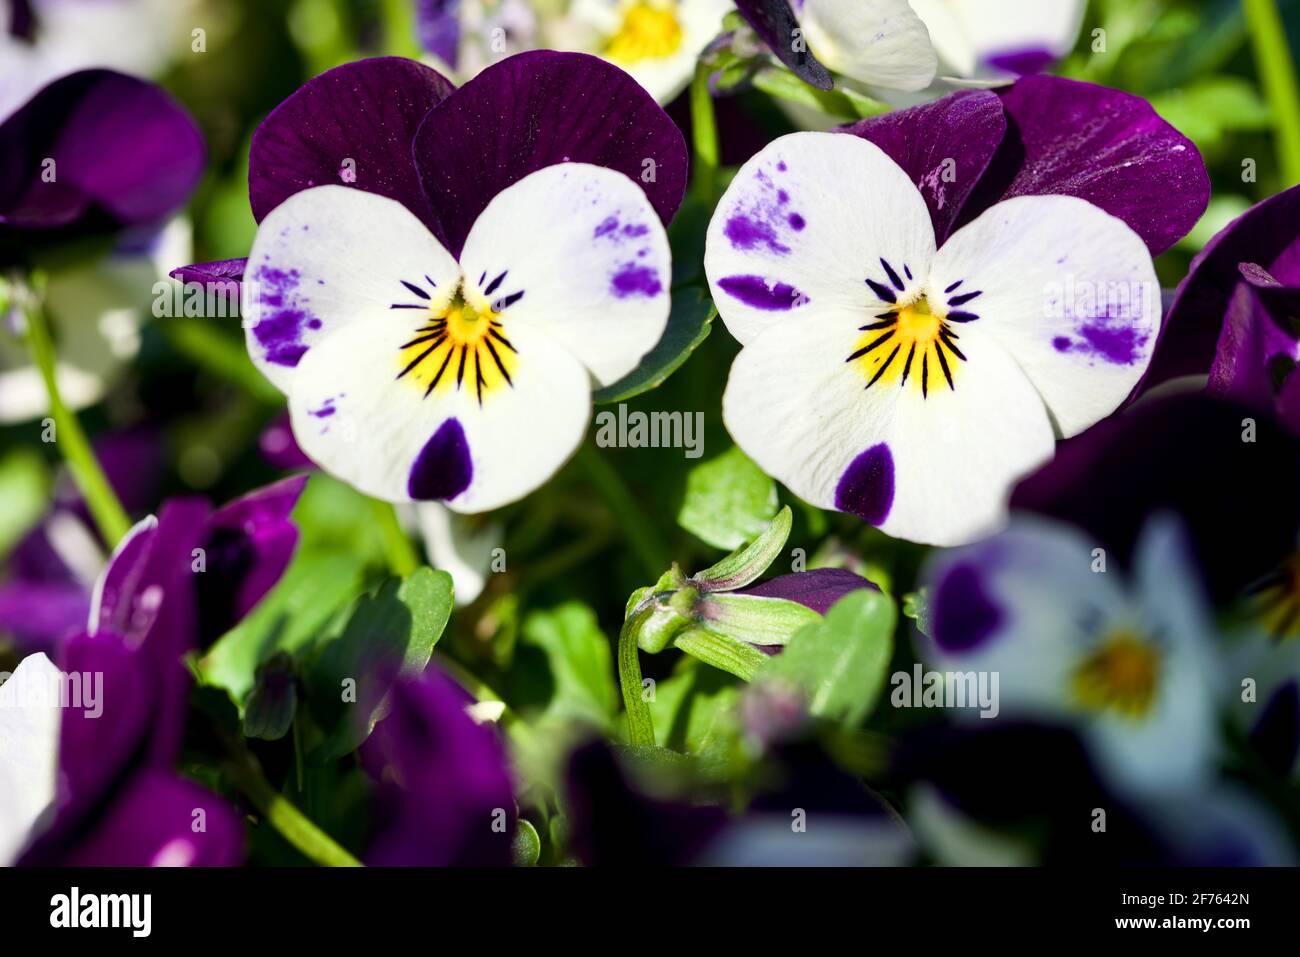 Close up of some Beautiful purple Violas Stock Photo